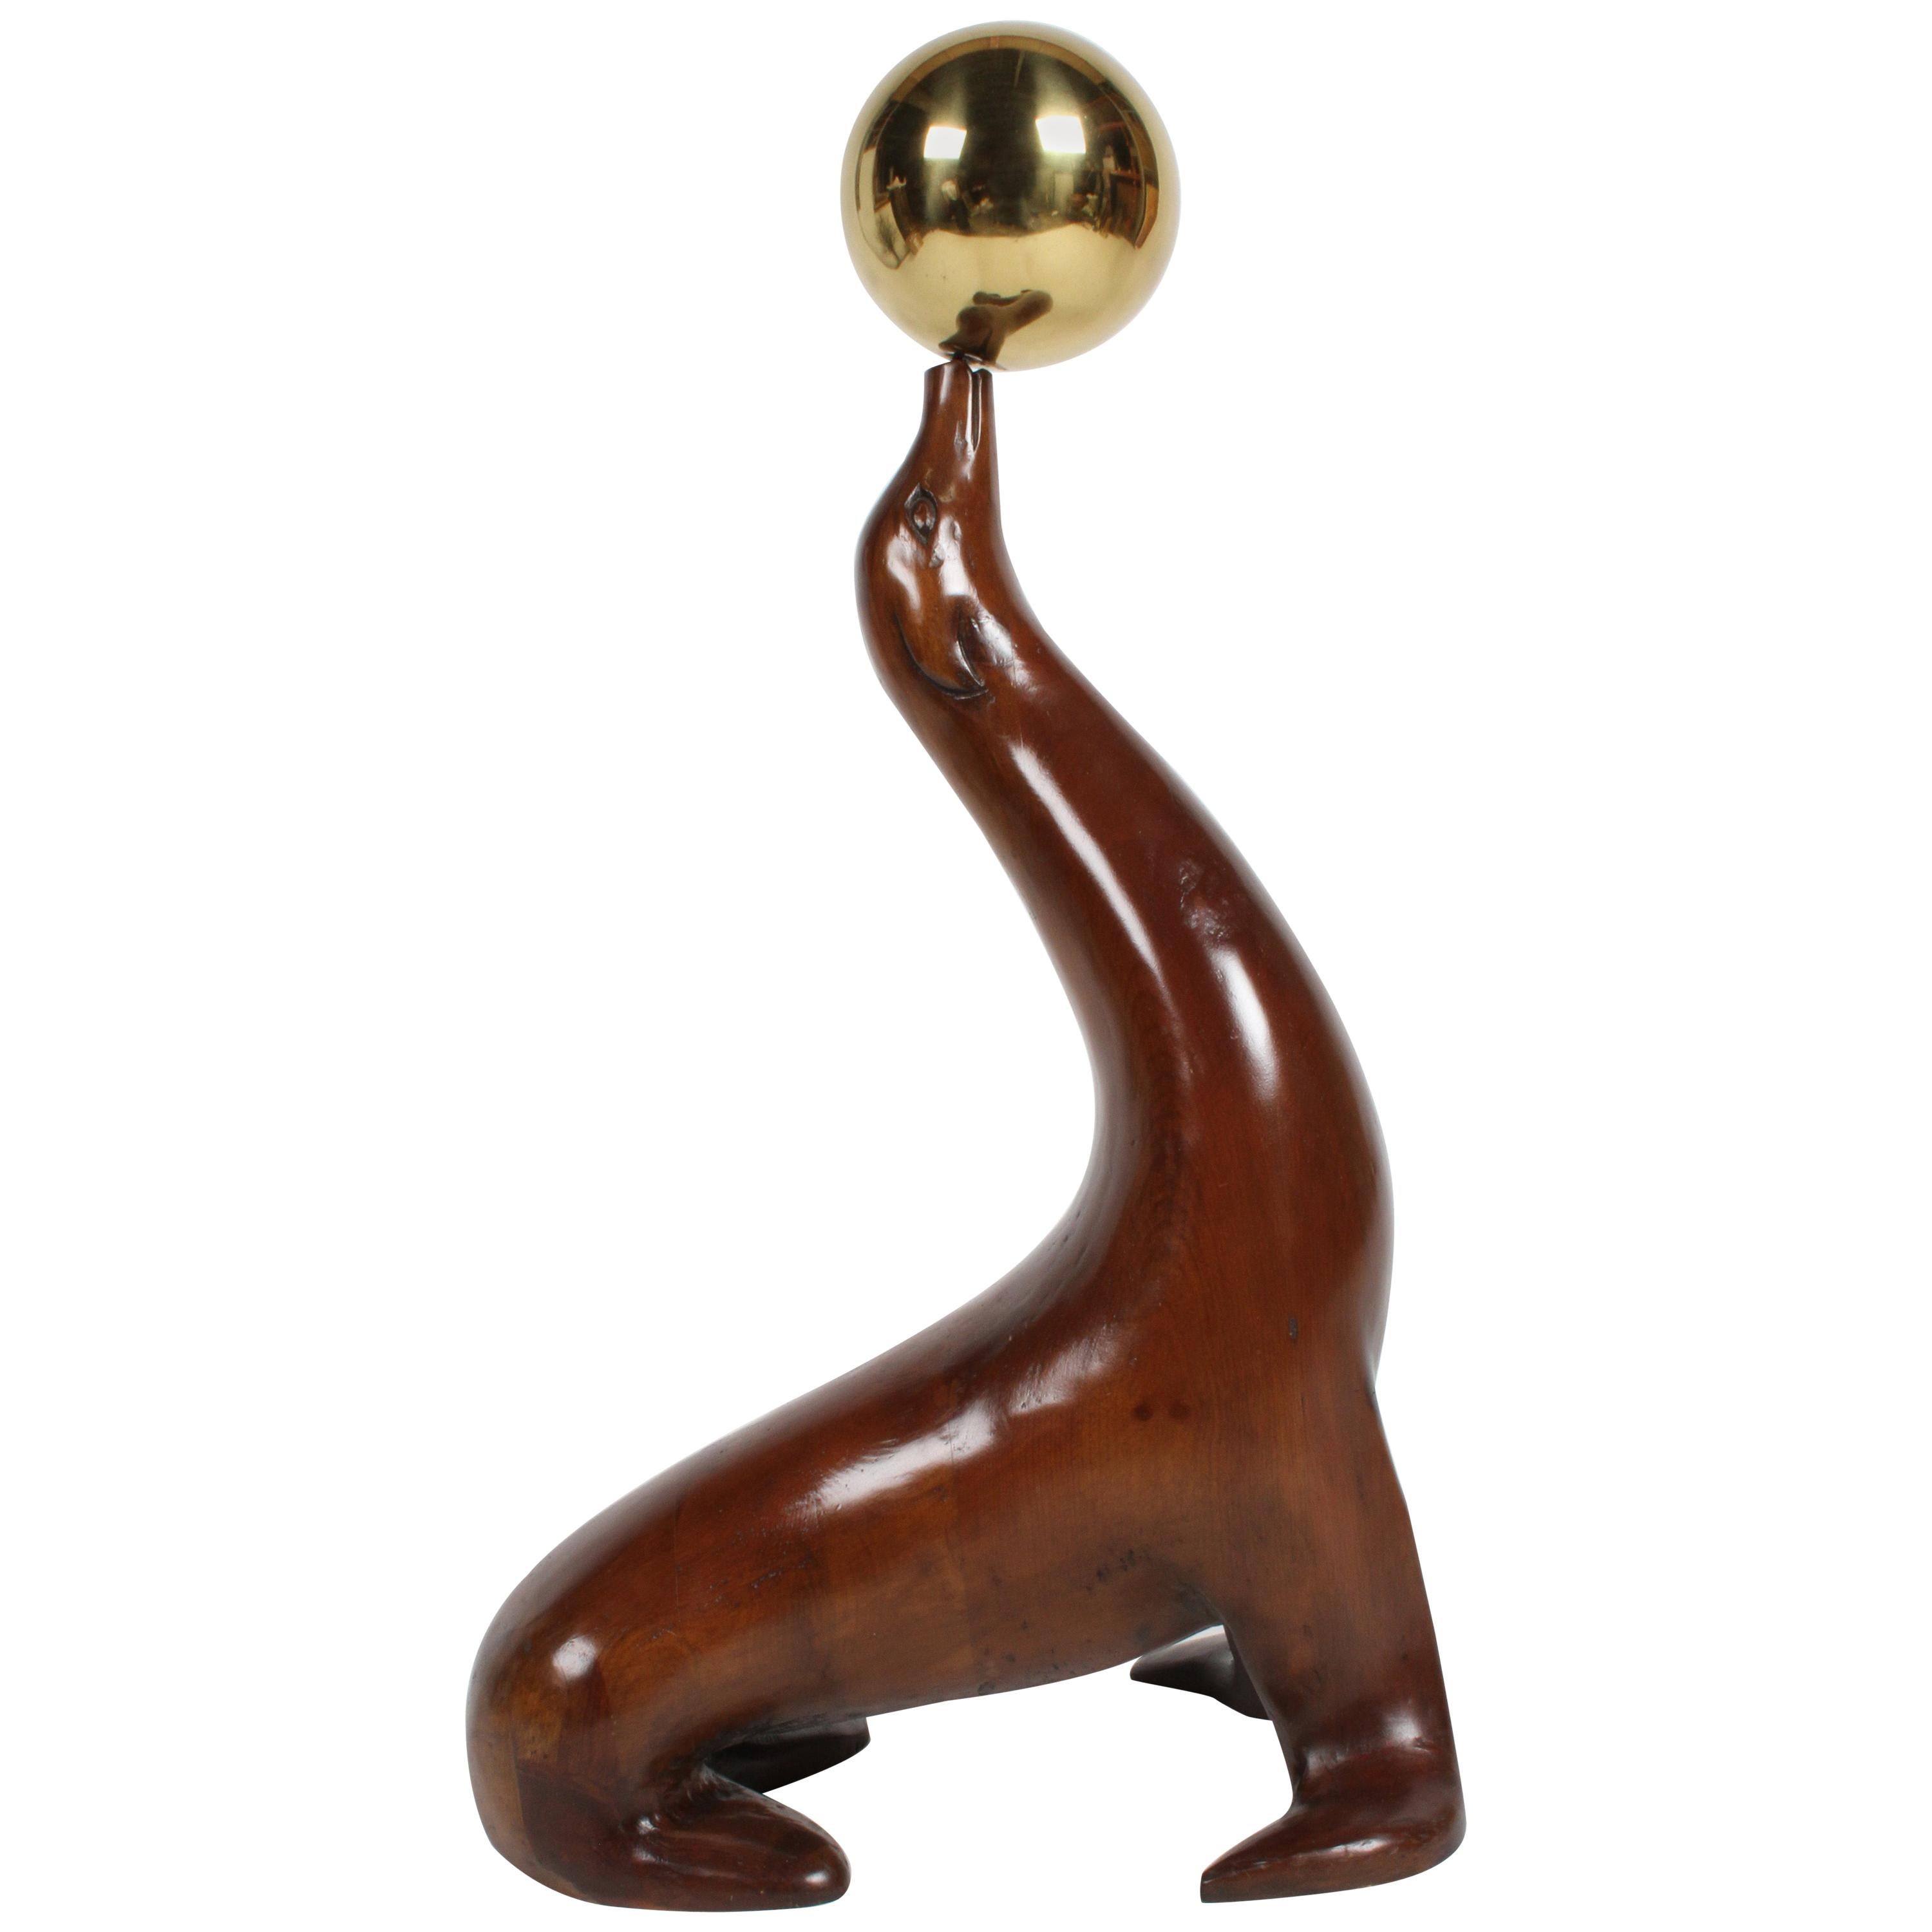 Grand lion ou sceau de mer sculpté en bois d'orme balançant une boule de laiton